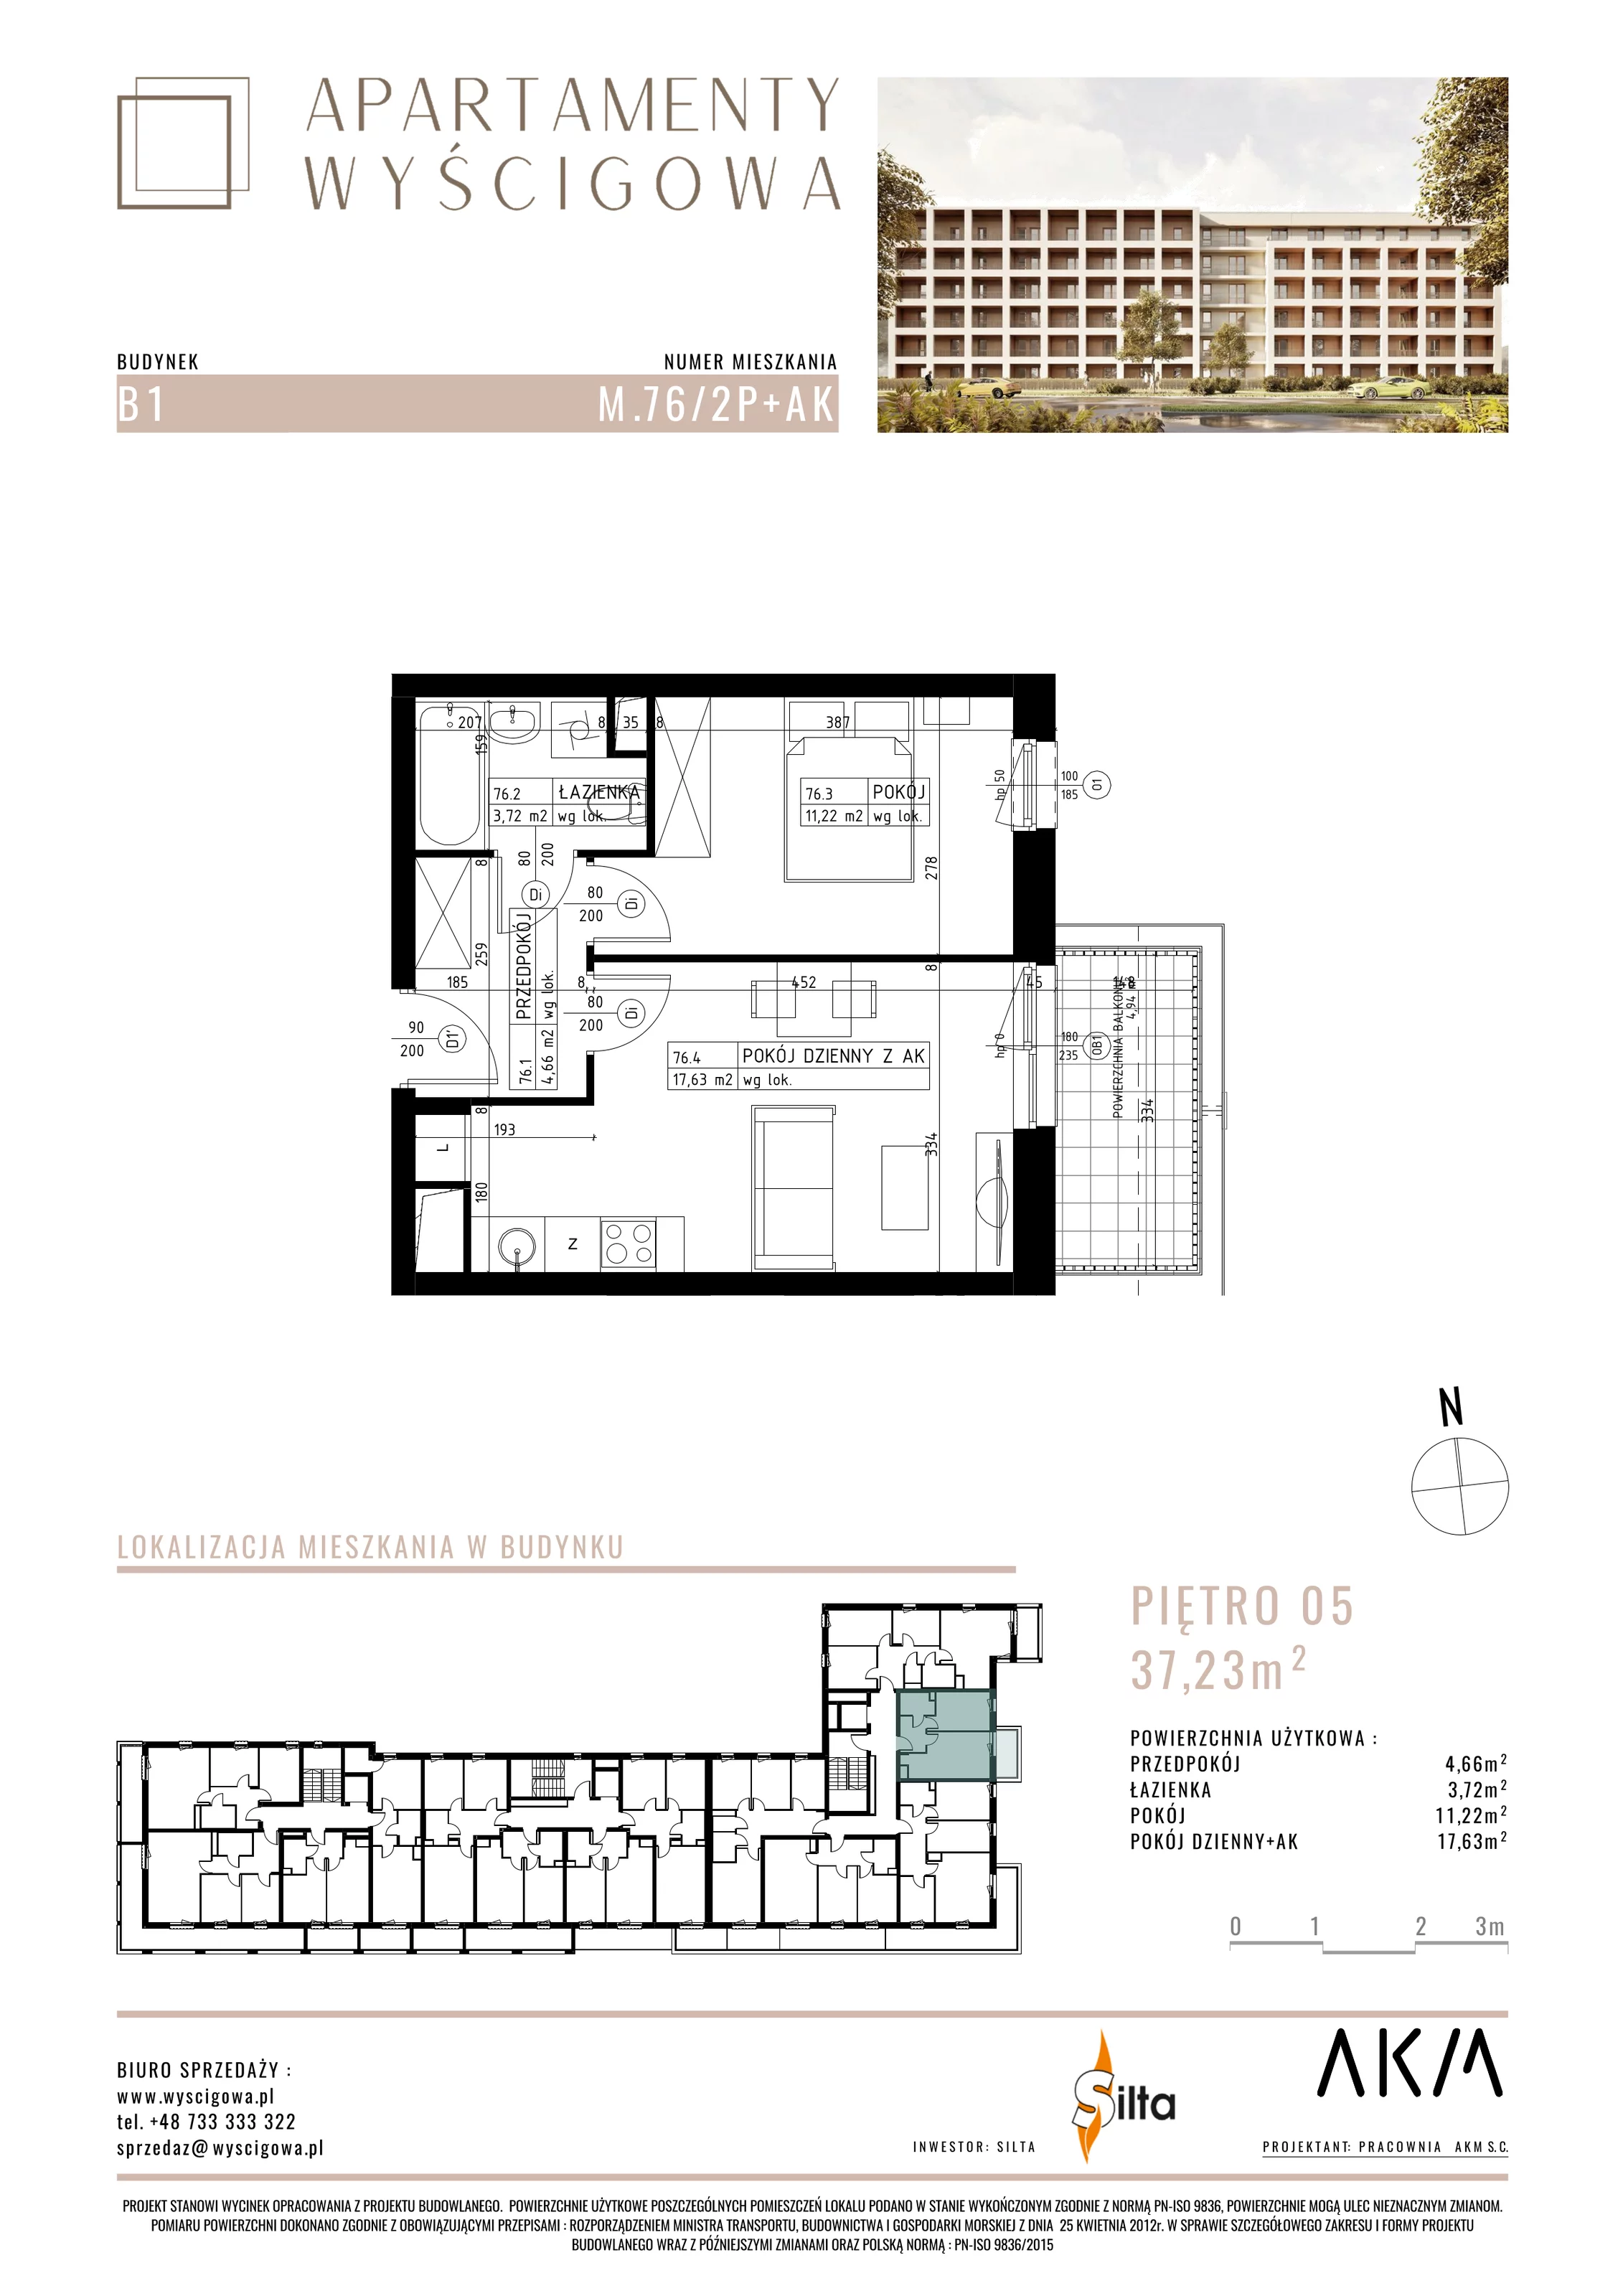 Mieszkanie 37,23 m², piętro 5, oferta nr B1.M76, Apartamenty Wyścigowa, Lublin, Dziesiąta, Dziesiąta, ul. Wyścigowa